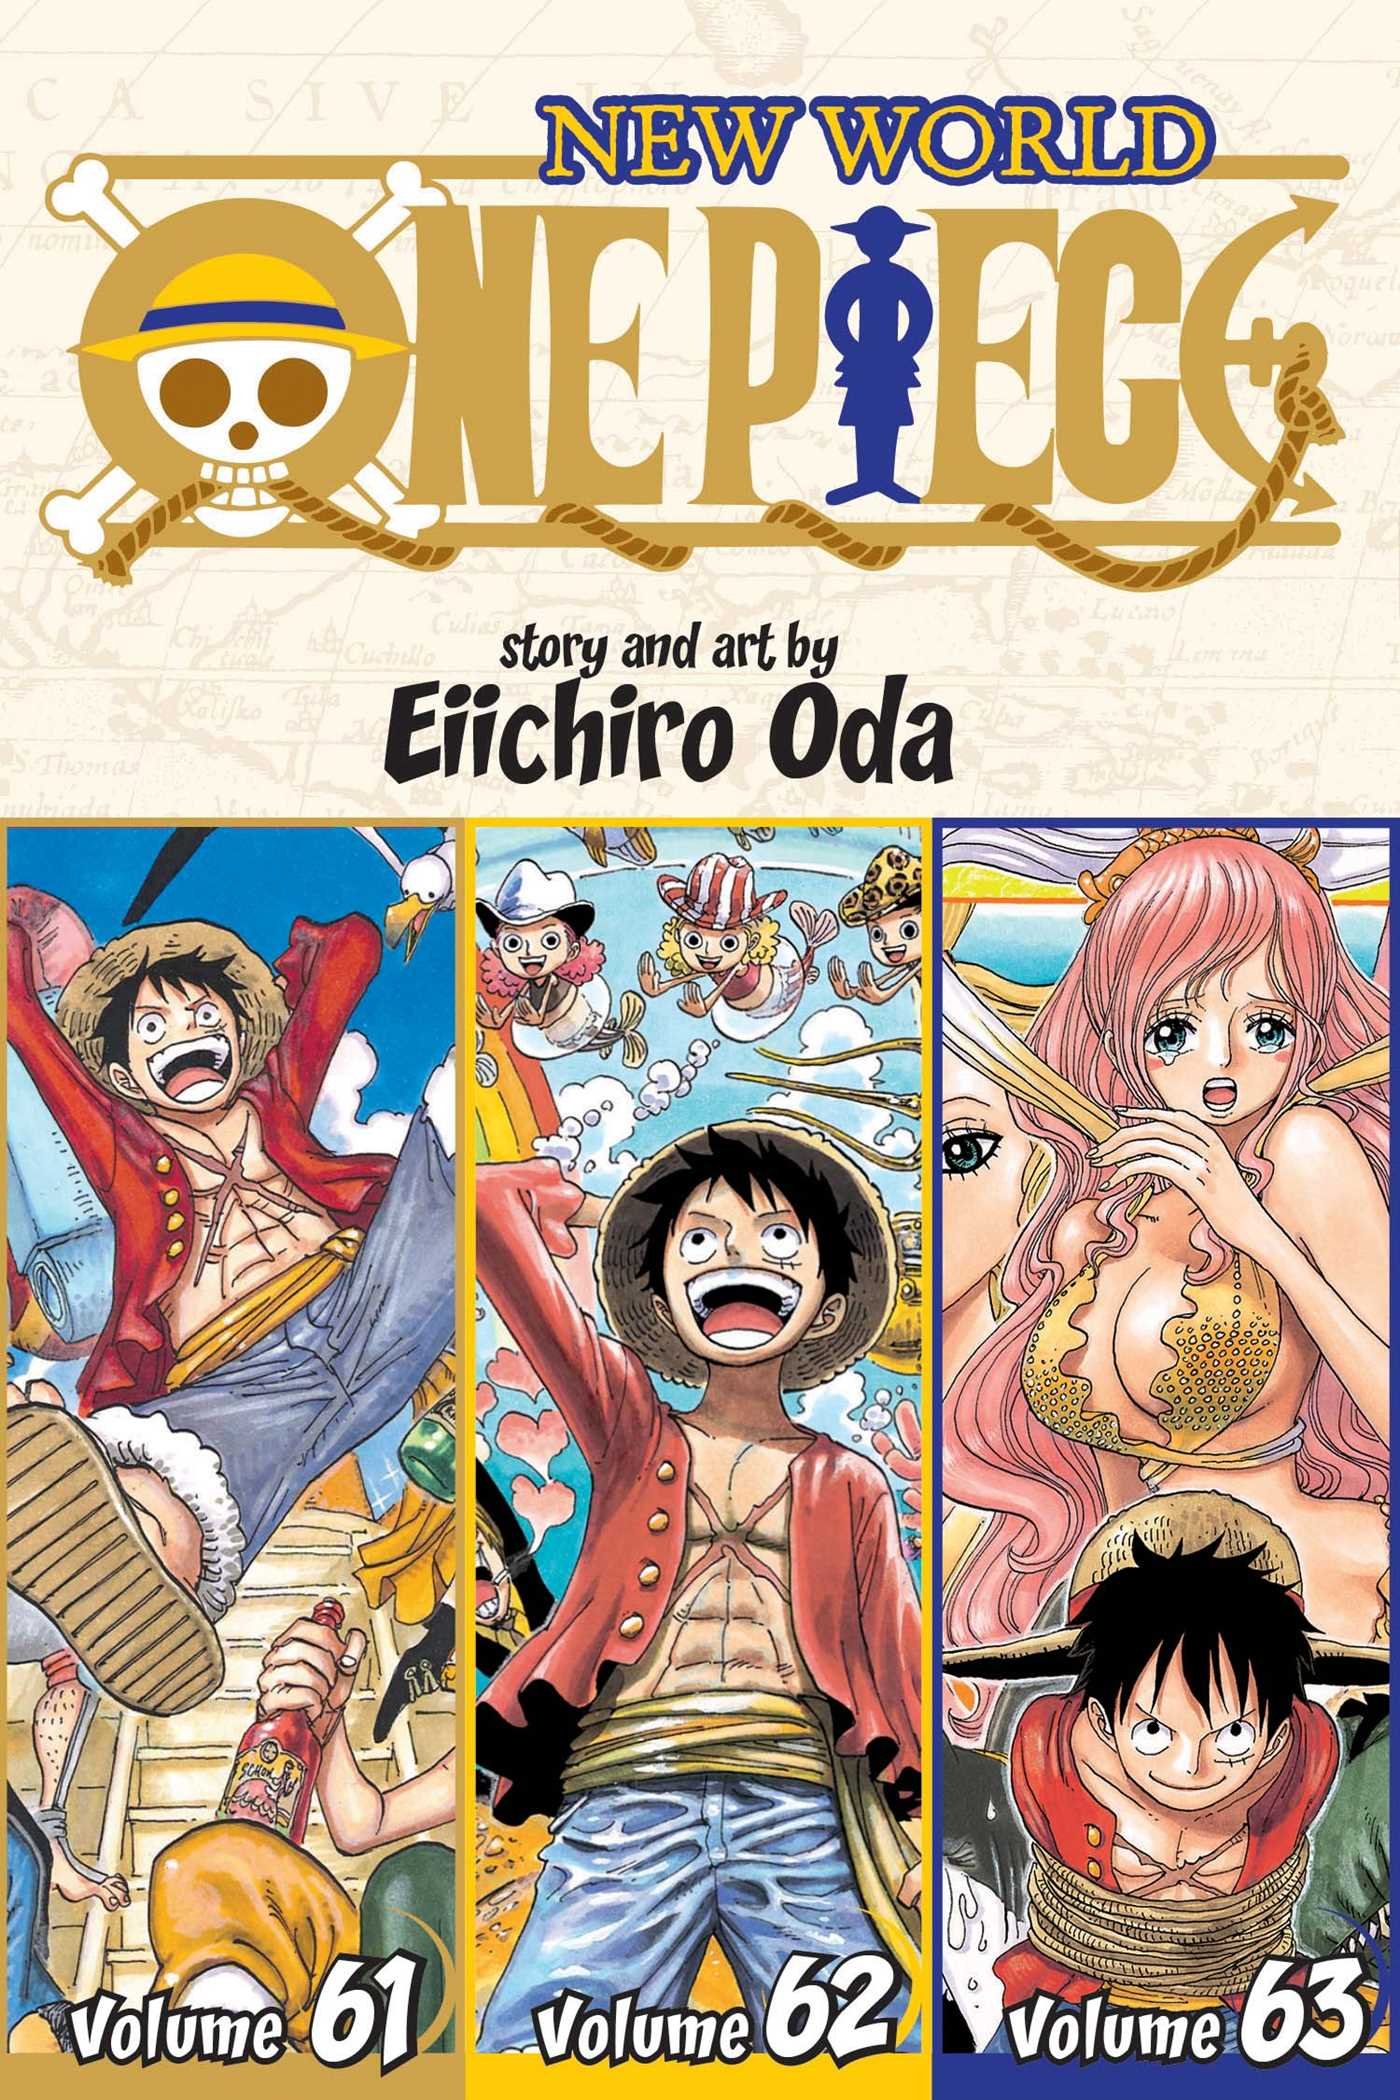 Coperta cărții: One Piece (3-in-1 Edition) - Volume 21 - lonnieyoungblood.com